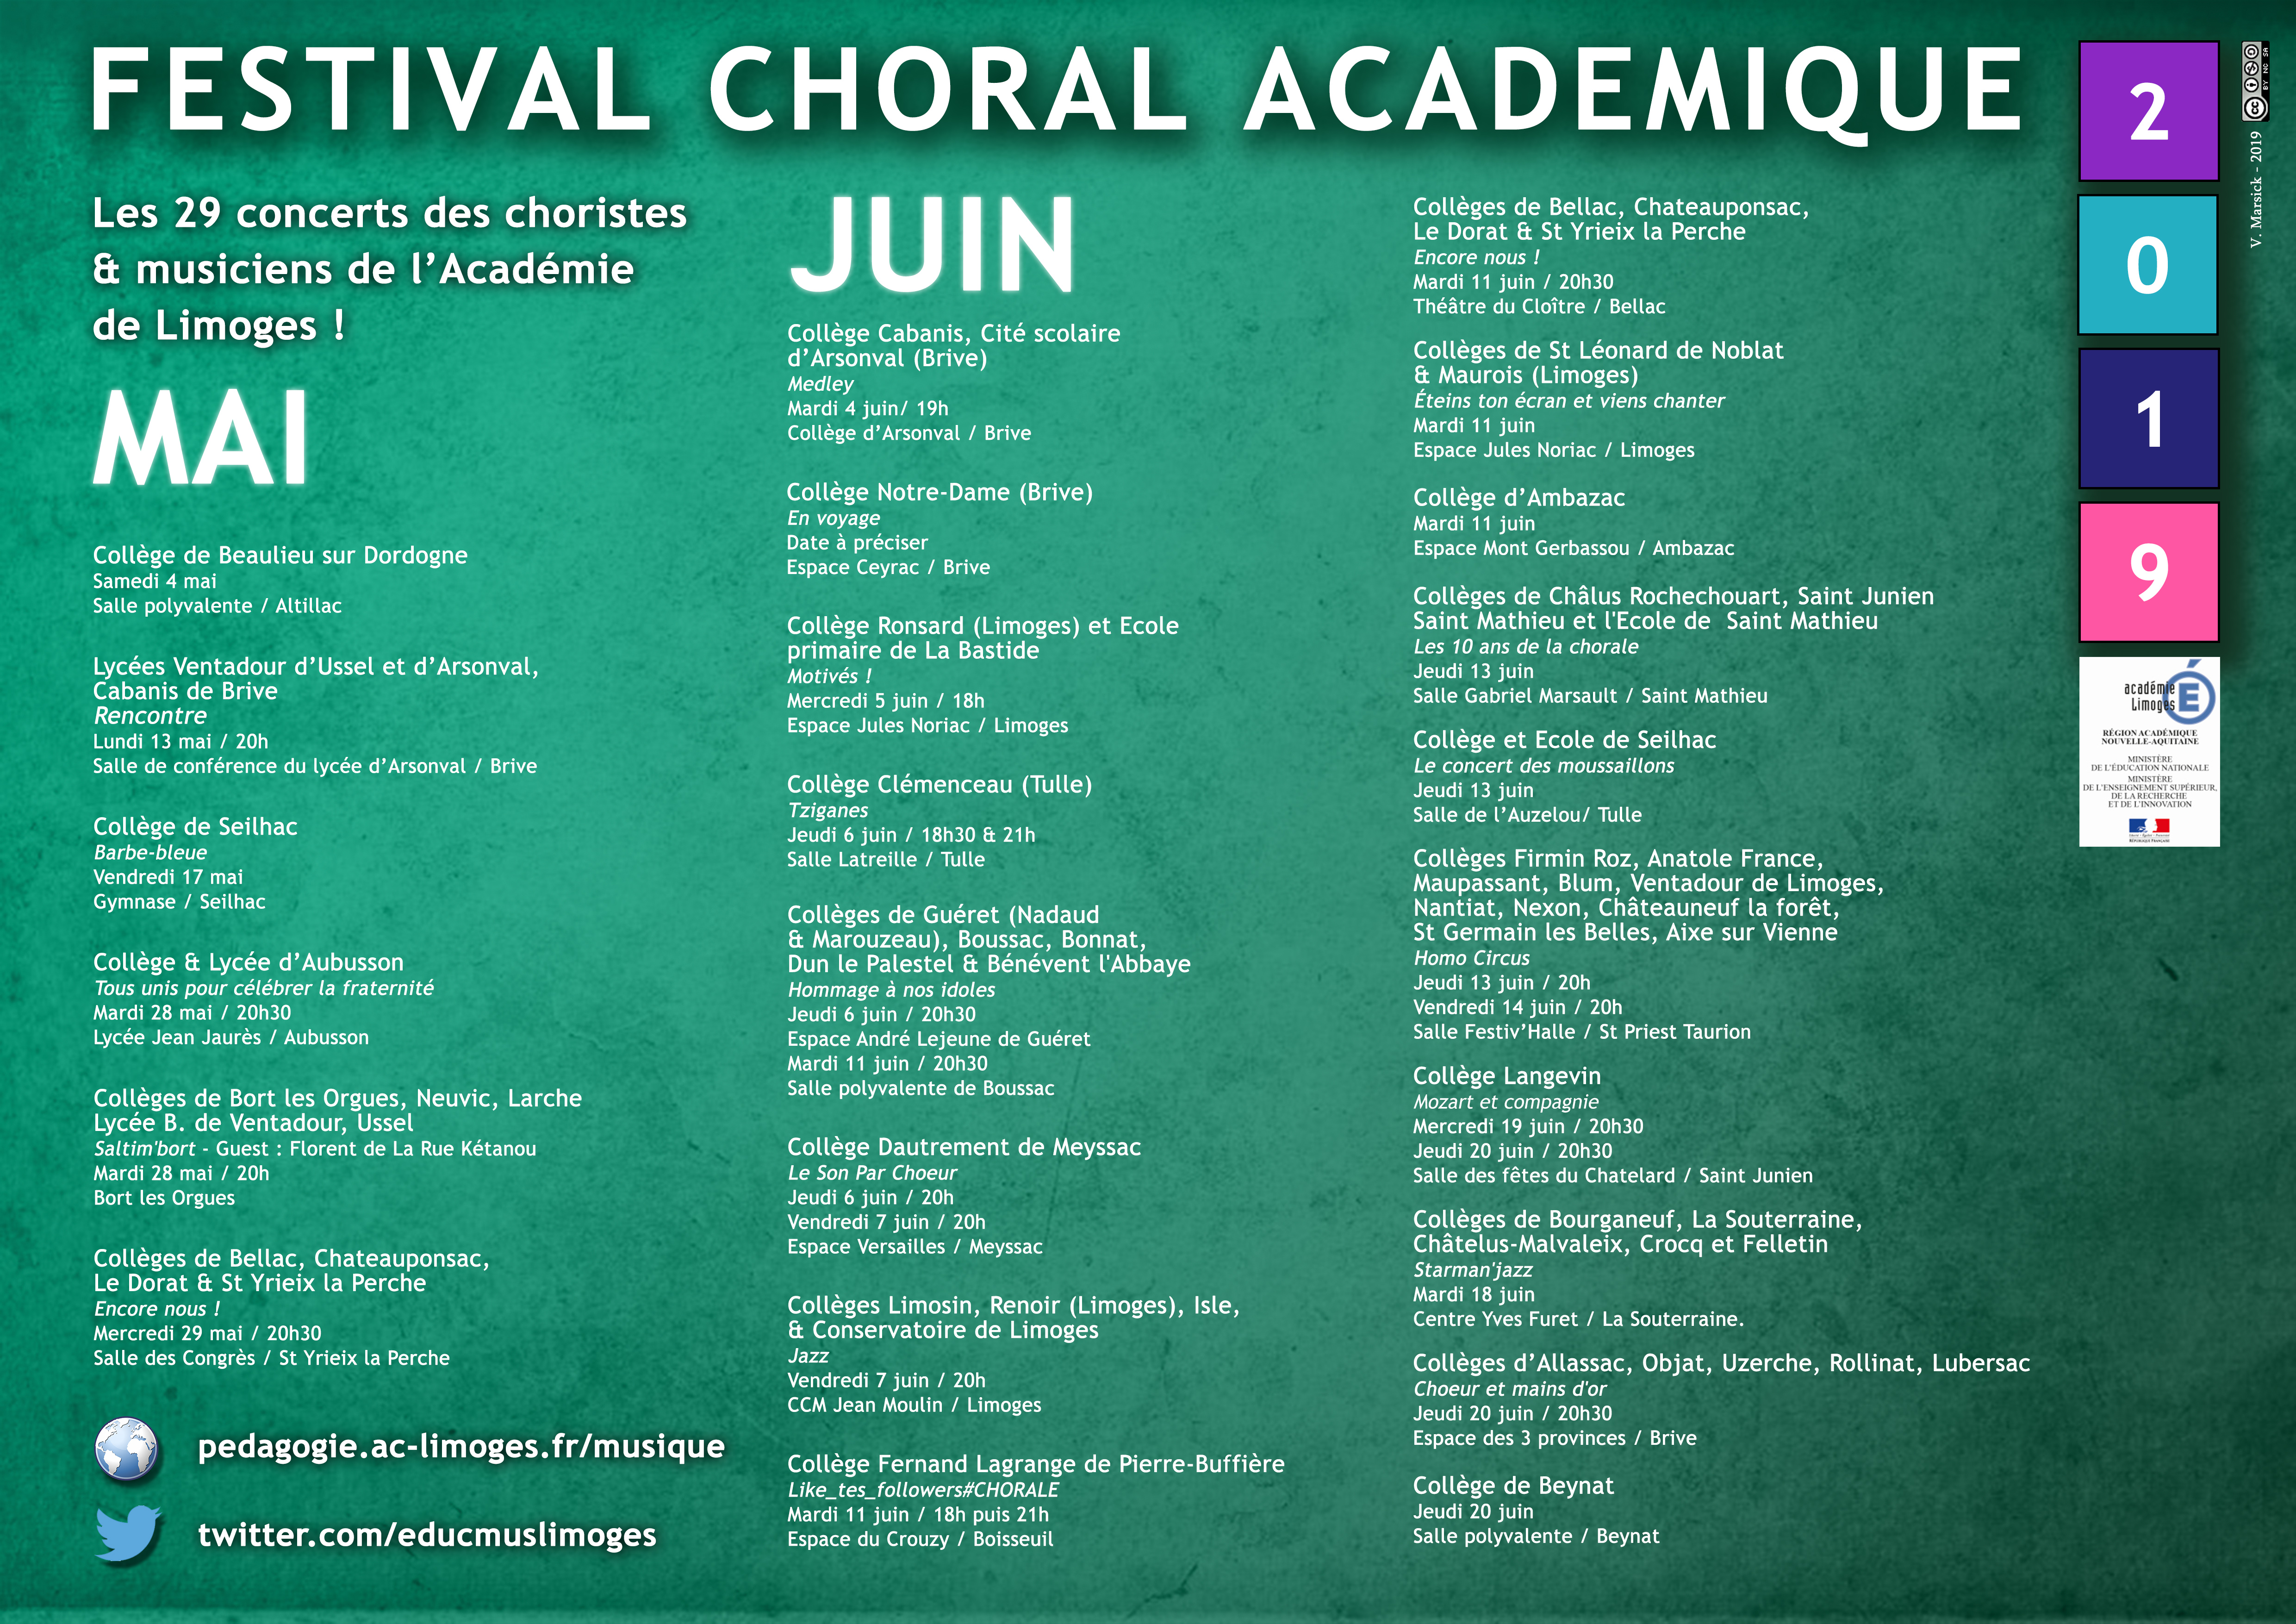 Le Festival Choral Académique 2019